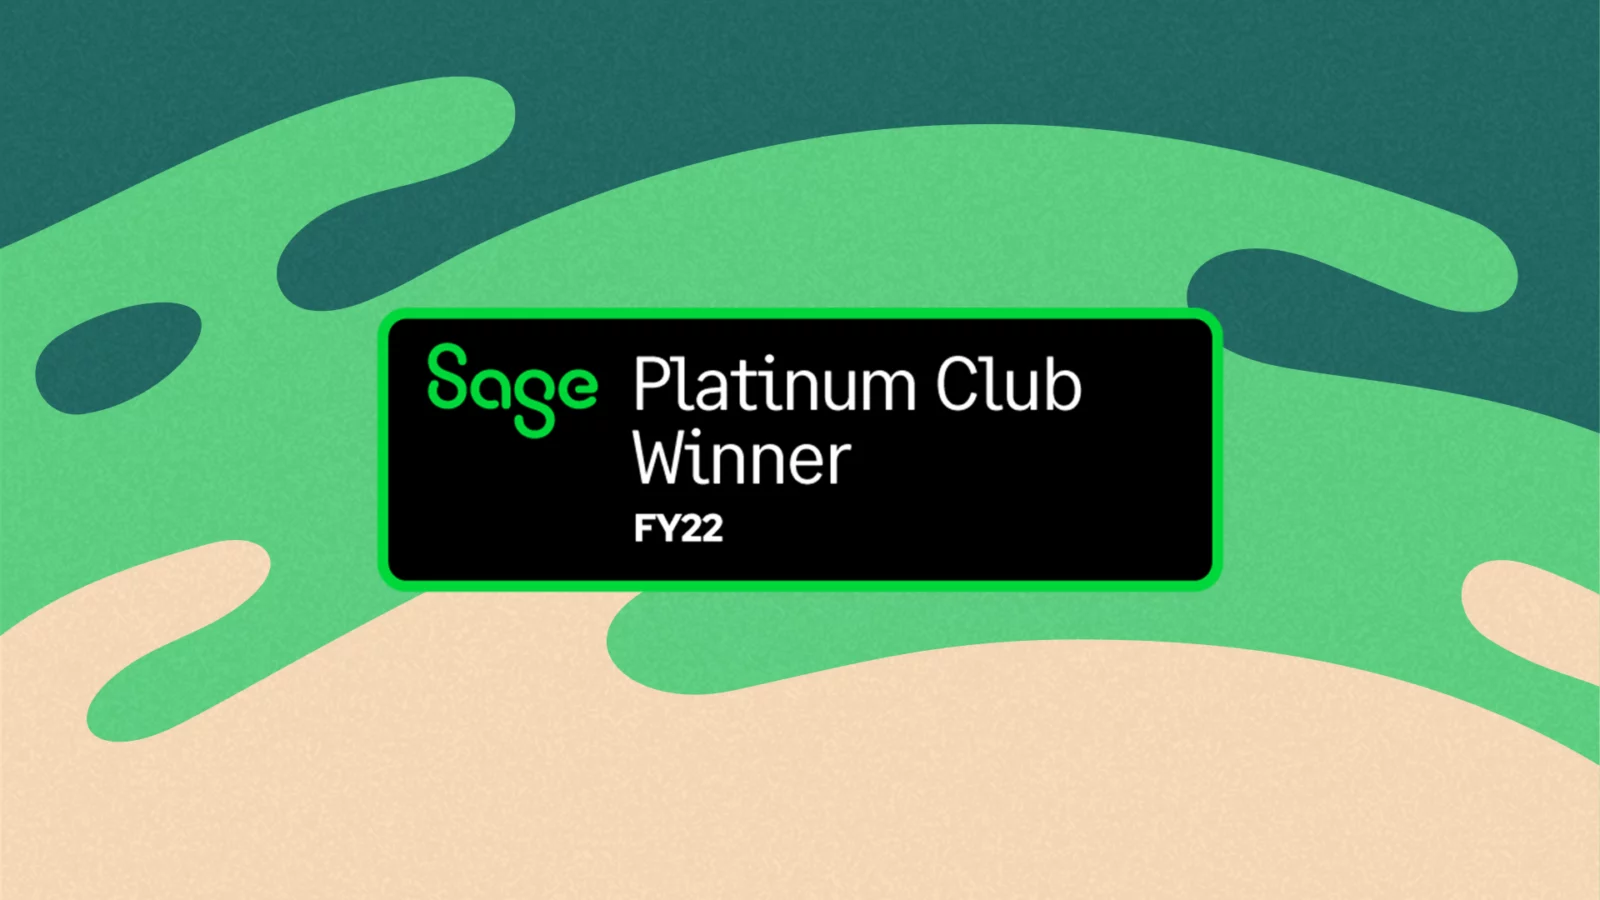 Award presented to FUJIFILMMicroChannel Sage Platinum Club